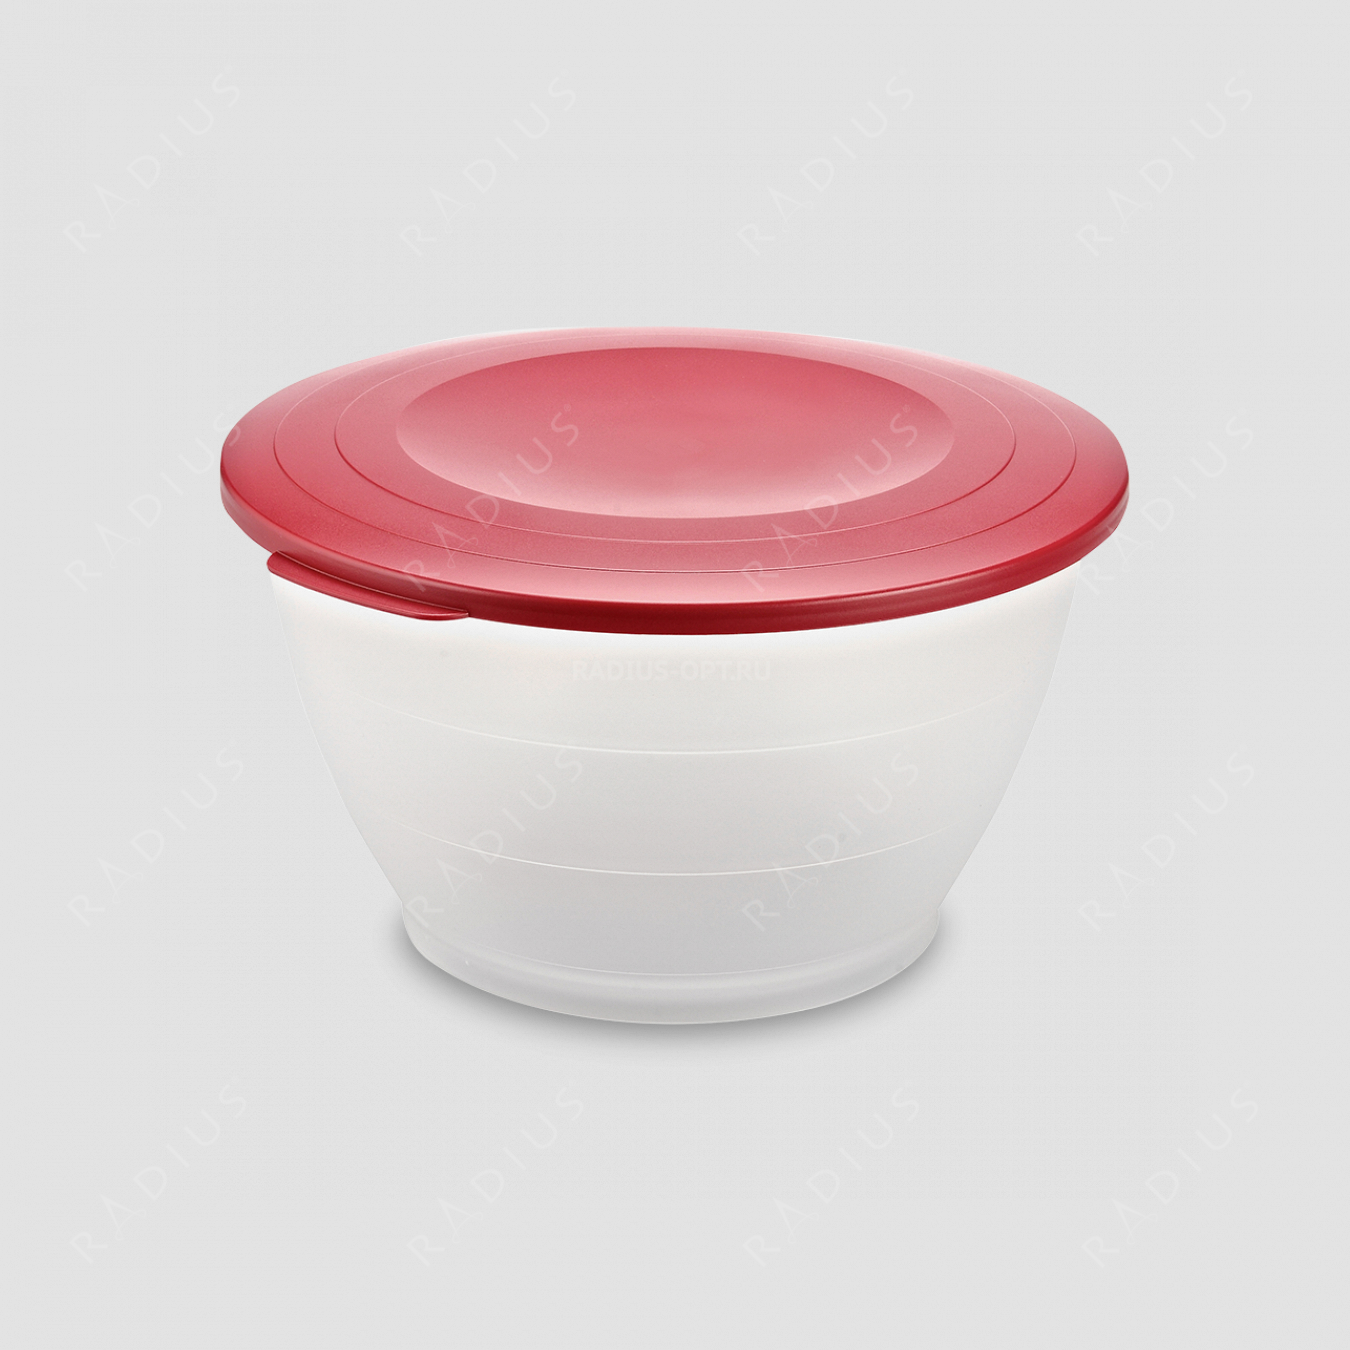 Емкость для салата с крышкой, объем 4,3 л, диаметр 25.5 см, цвет - красный, серия Plastic tools, Westmark, Германия